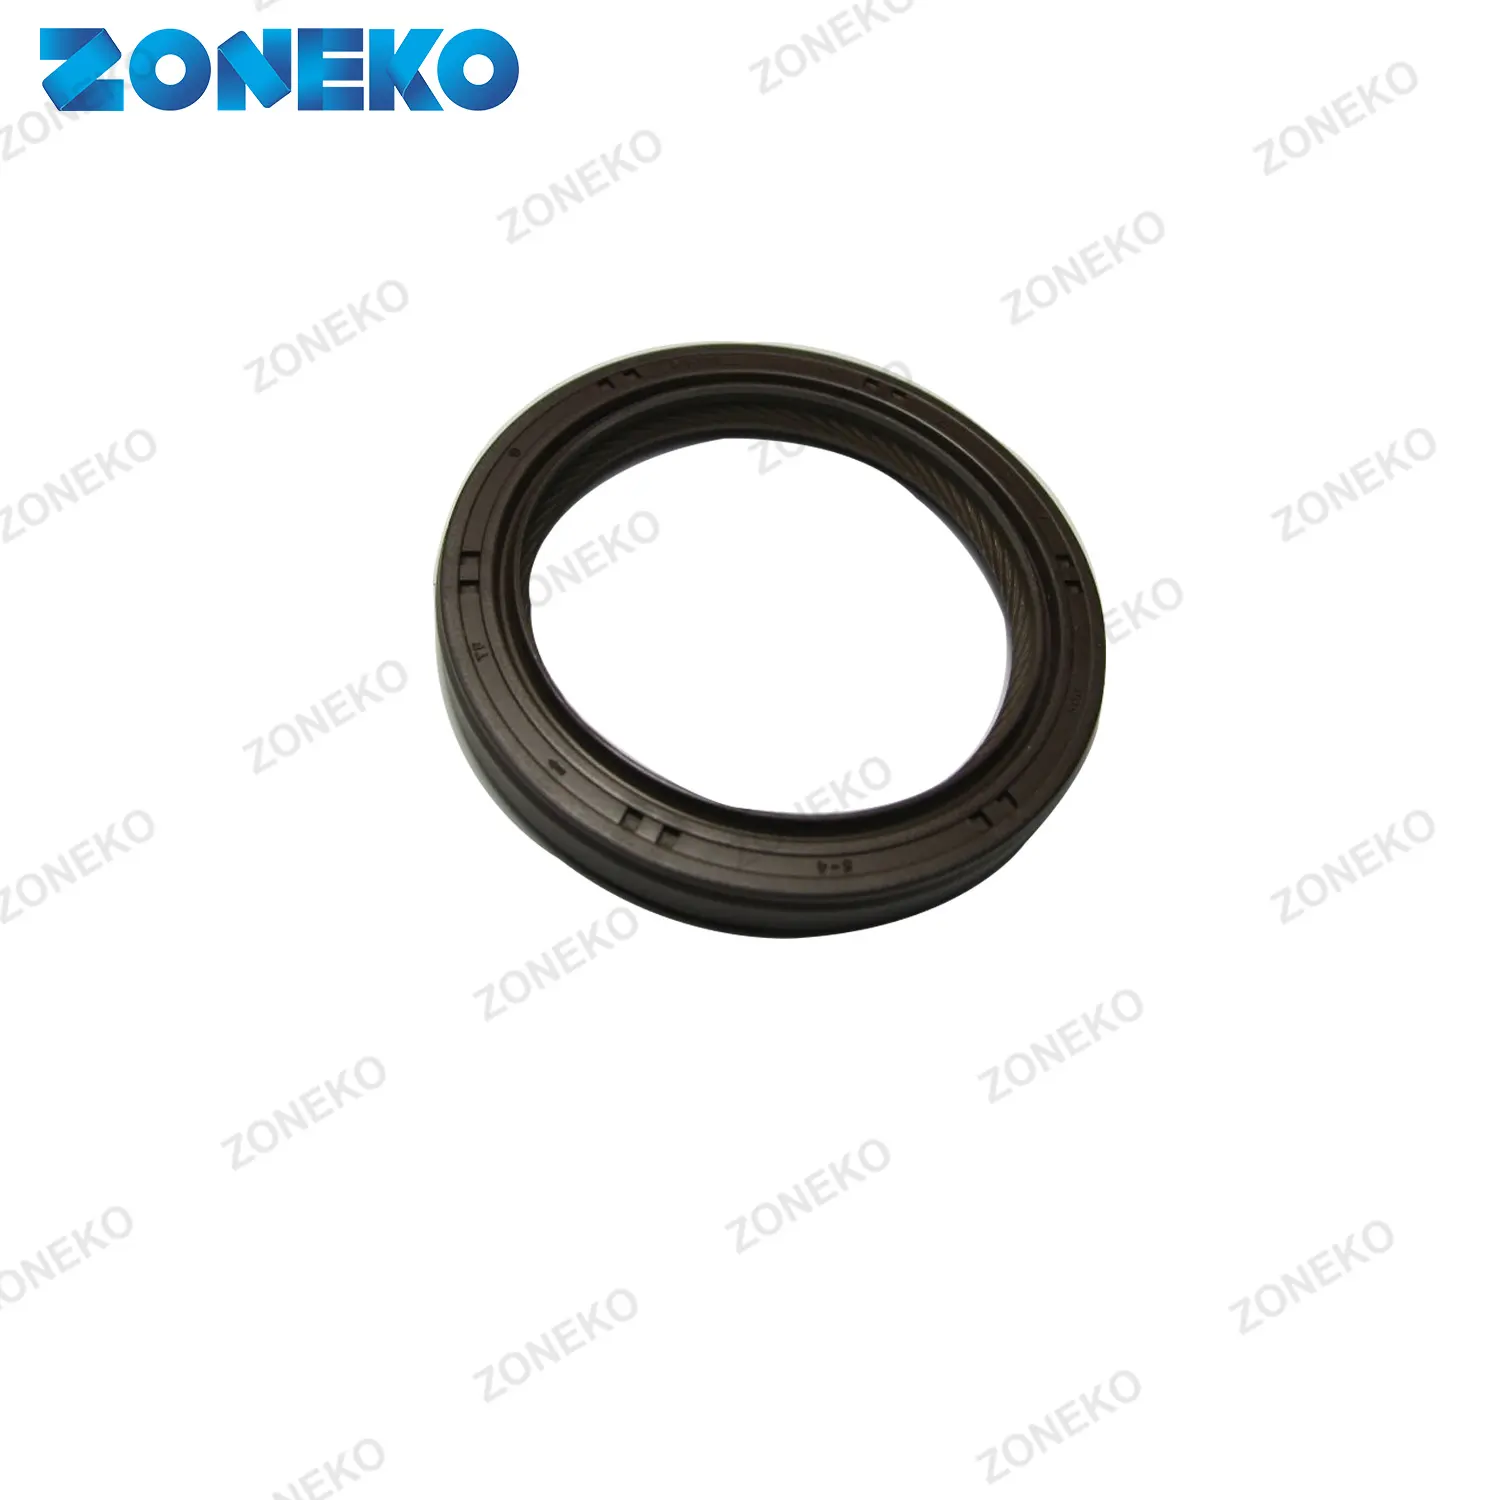 Zoneko selador de óleo para motor, melhor preço, peças de motor de alta qualidade › 21421 2g100, adequado para hyundai, kia, coreano